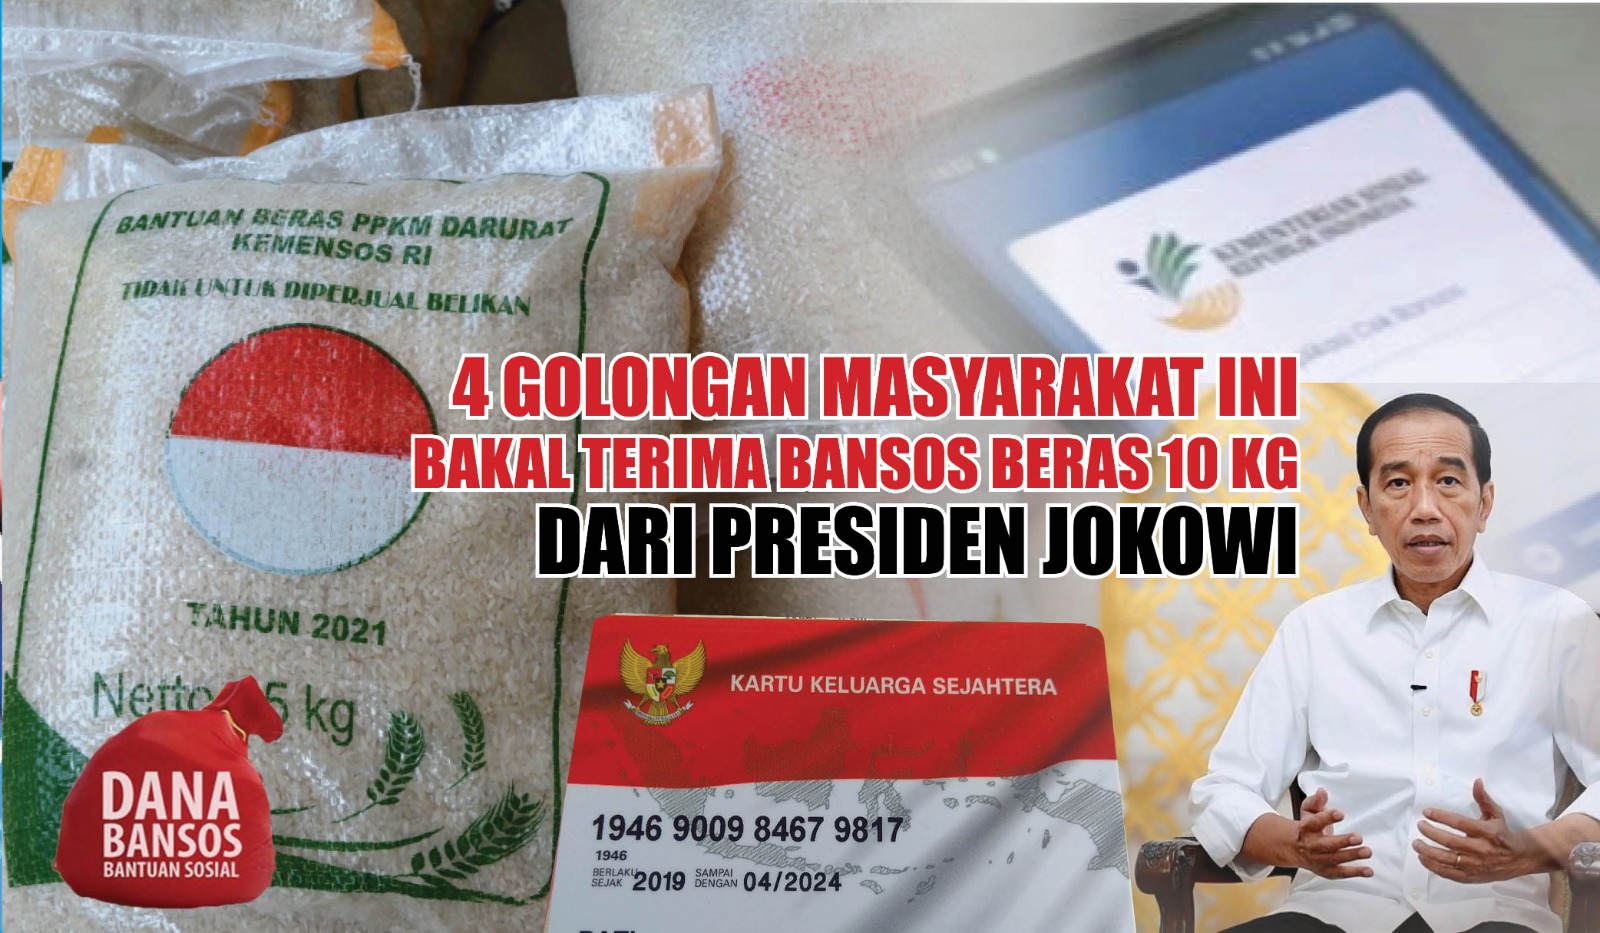 Selamat 4 Golongan Masyarakat Ini Bakal Terima Bansos Beras 10 Kg dari Presiden Jokowi, Siapa Saja?